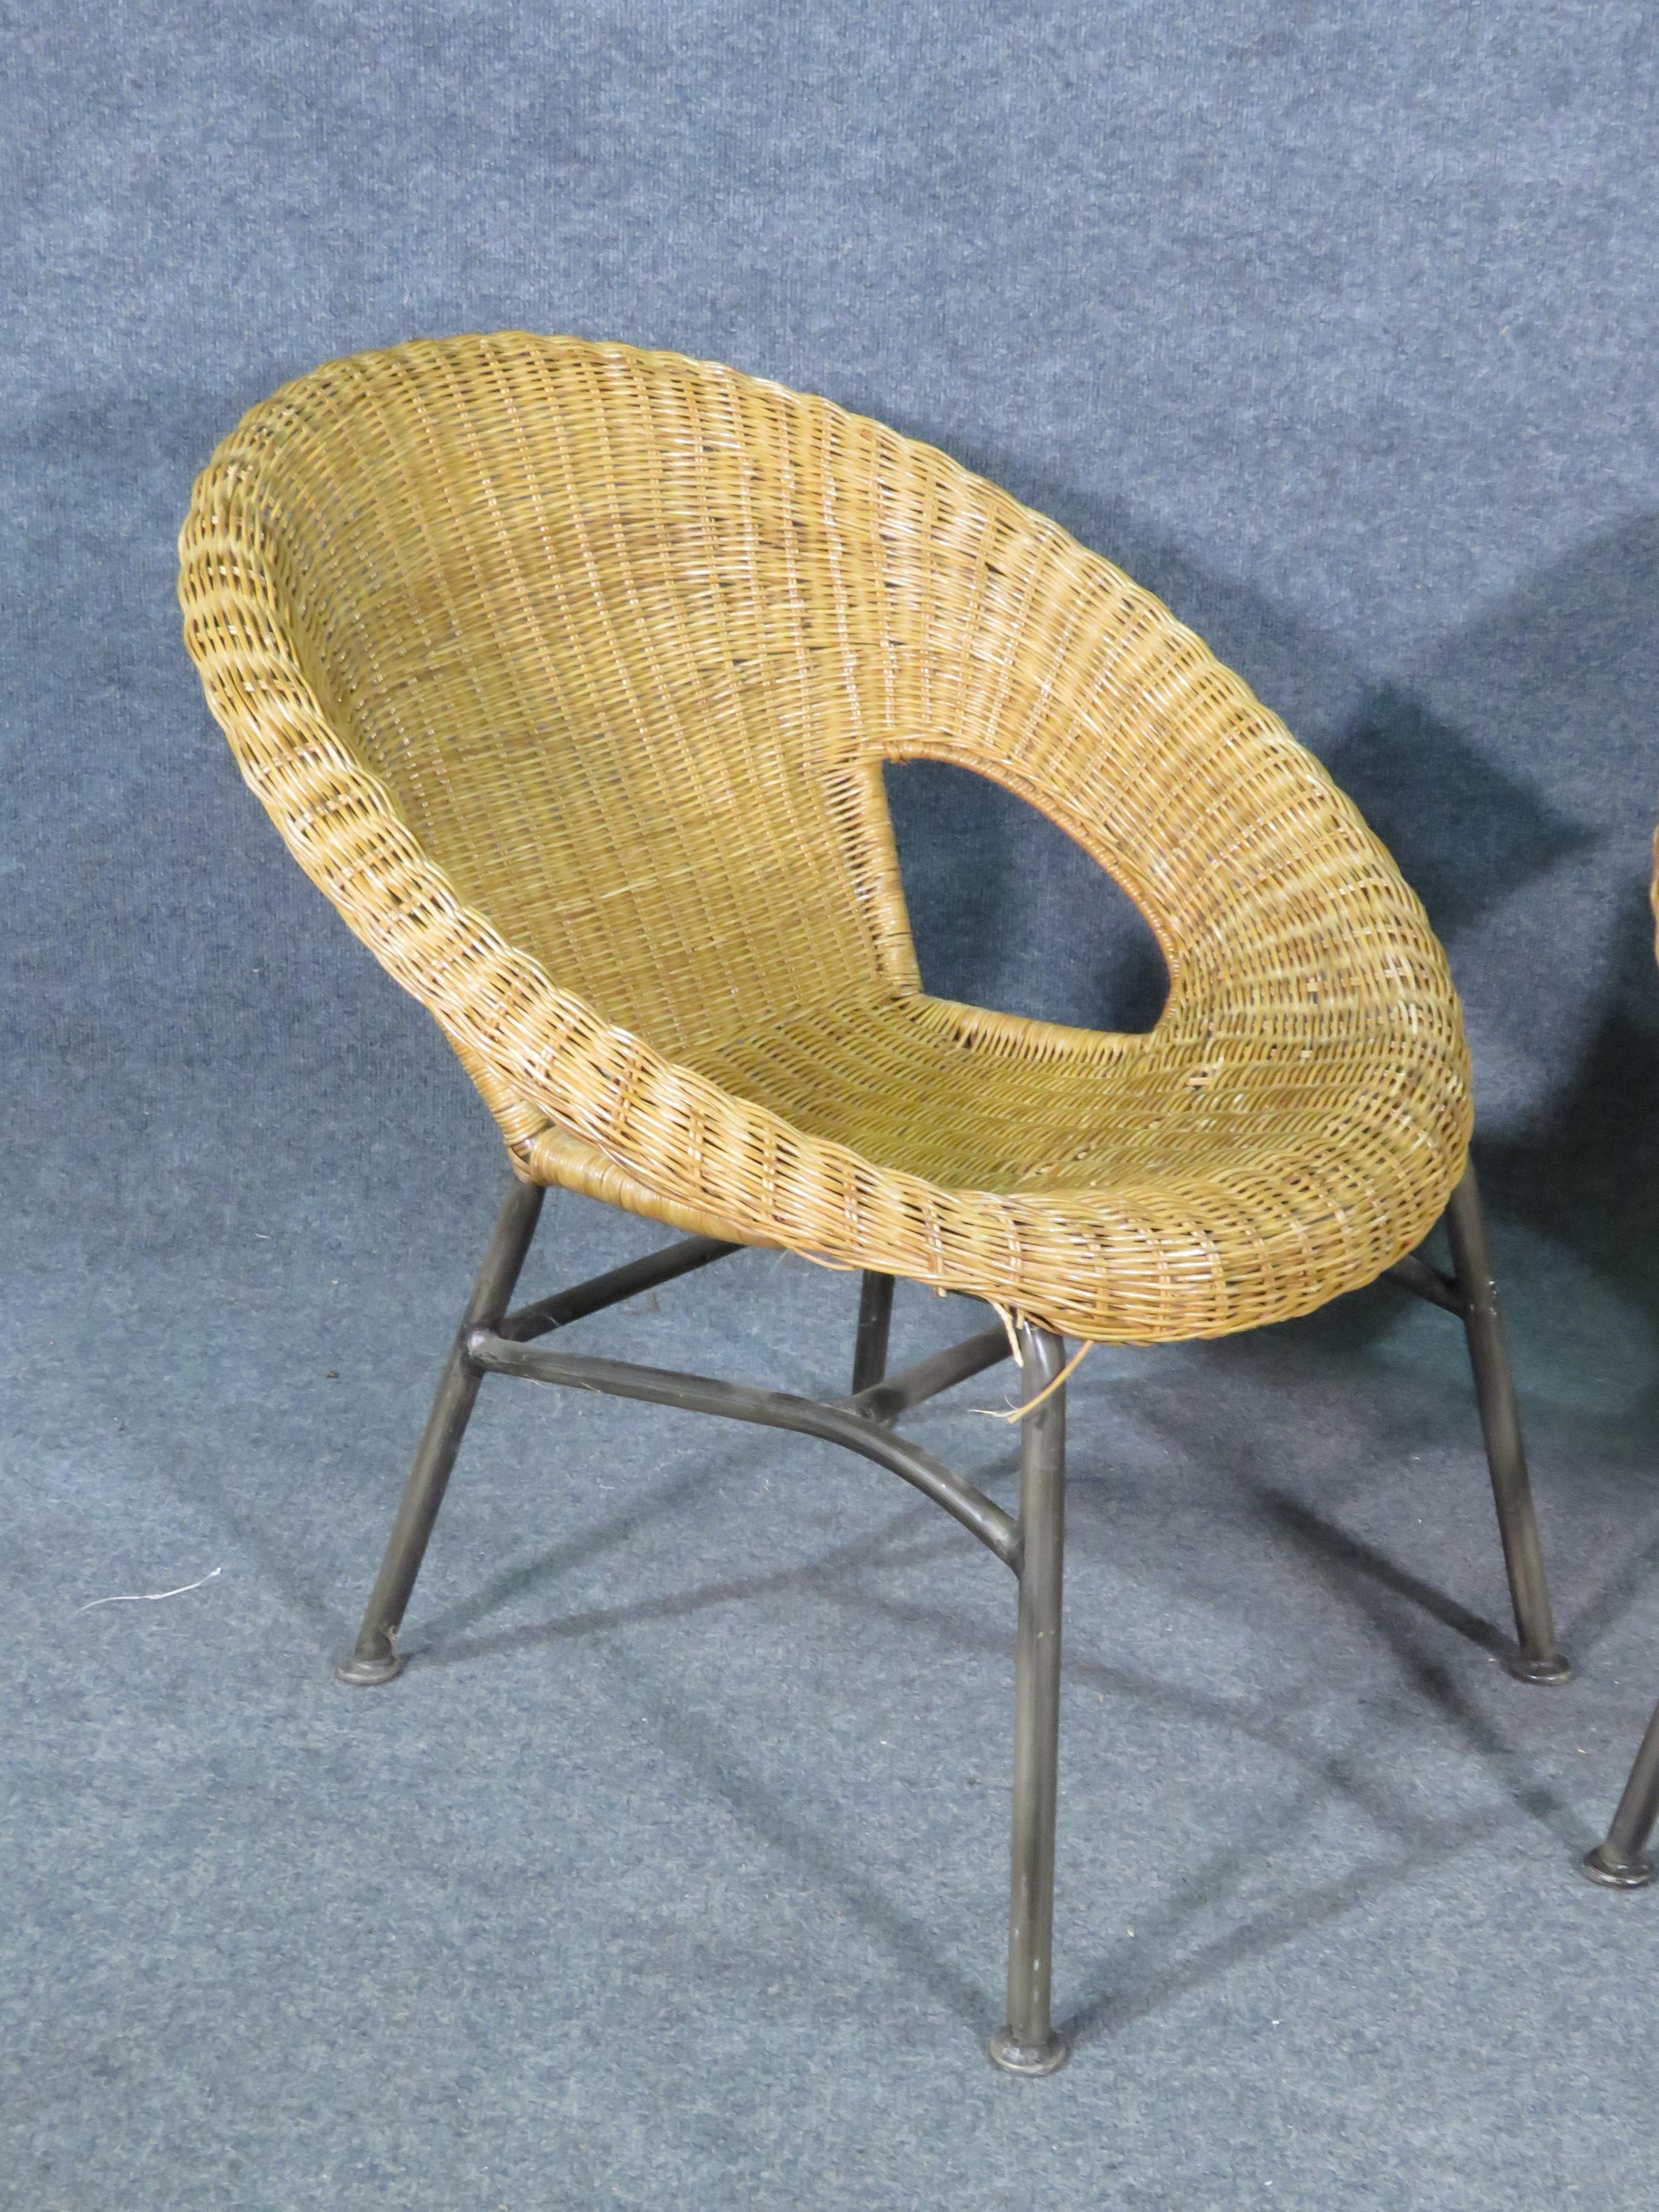 Confortable et élégante paire de chaises panier en osier vintage. Combinant un cadre métallique et un design arrondi en osier, ces chaises sont parfaites pour s'asseoir à l'intérieur ou à l'extérieur. Veuillez confirmer la localisation de l'article